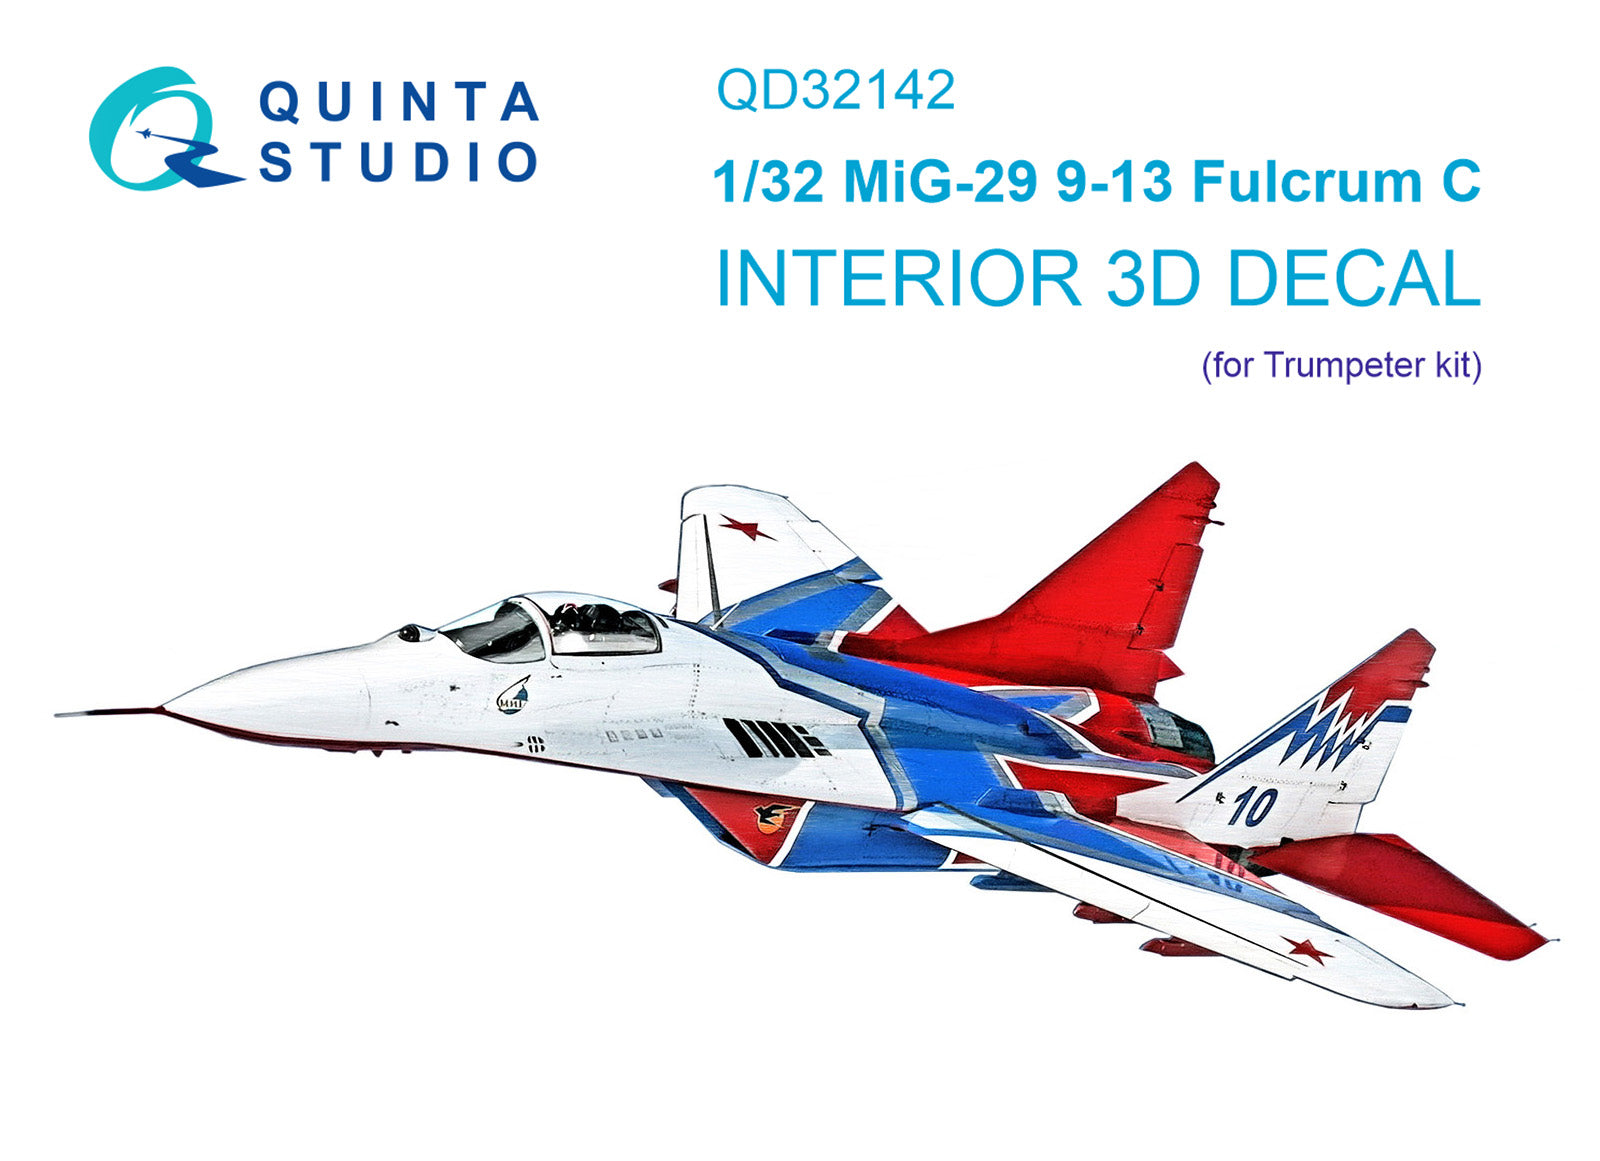 Quinta Studio - 1/32 MiG-29 9-13 Fulcrum C QD32142 for Trumpeter kit